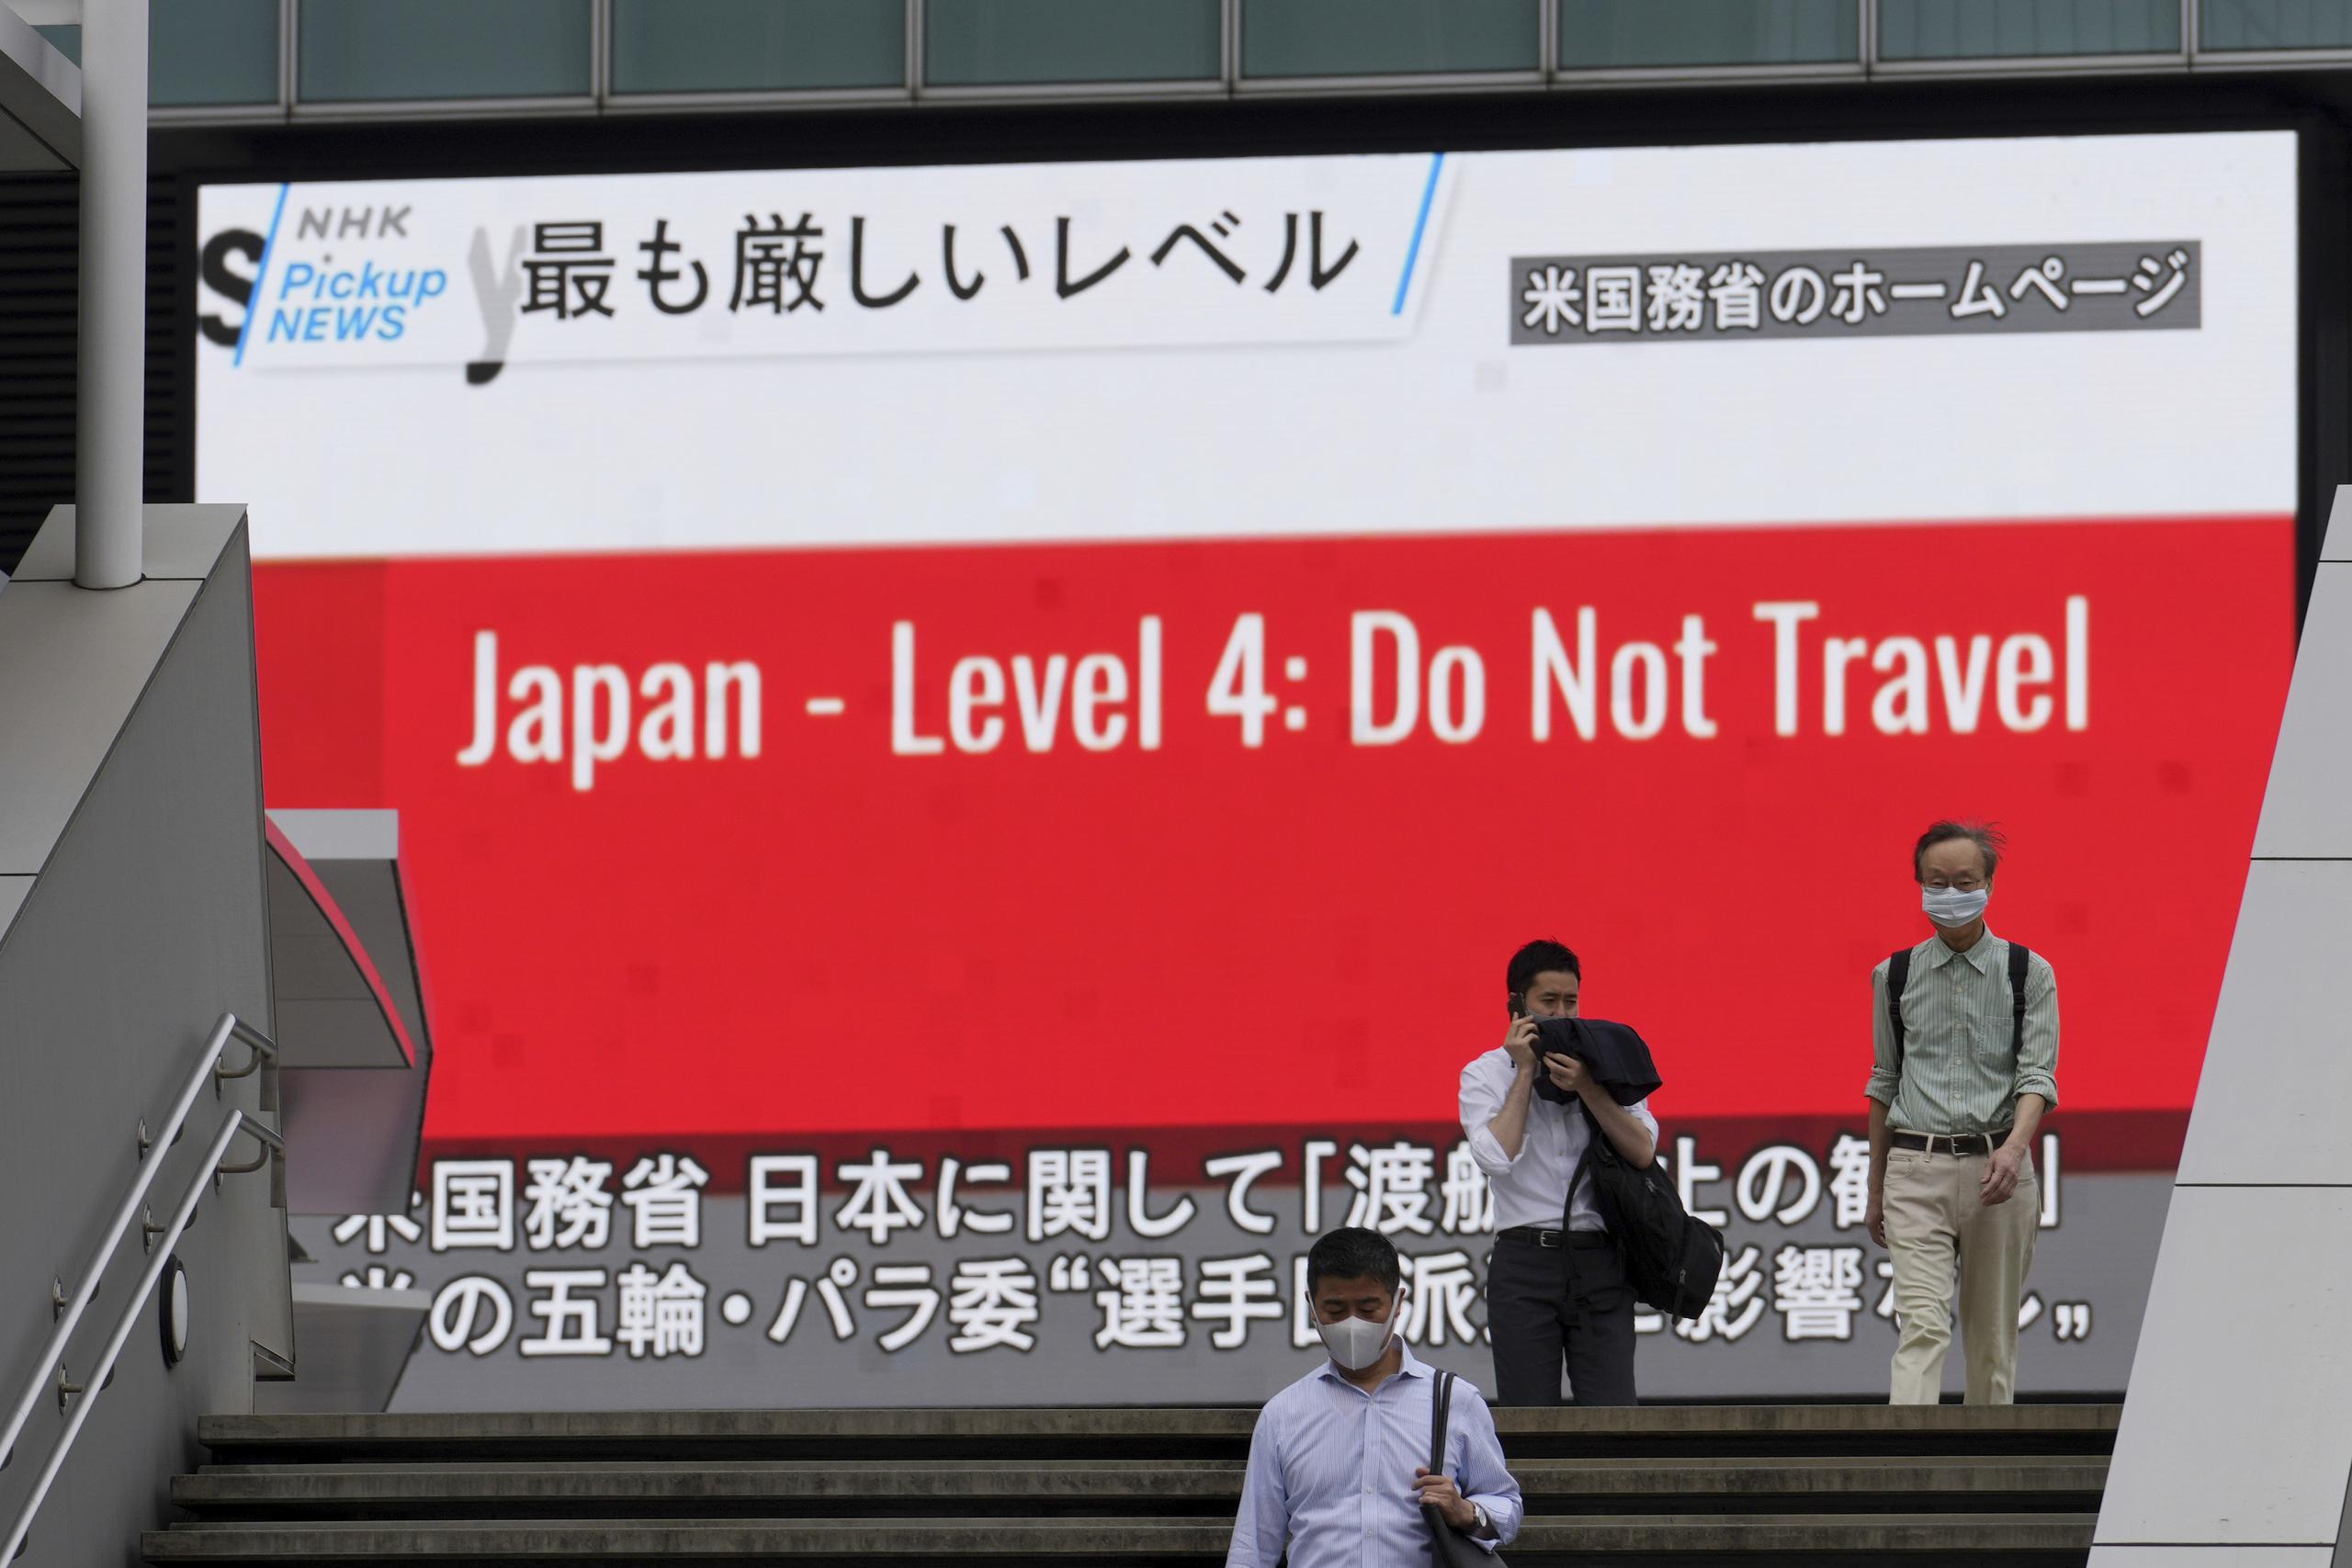 Transeúntes con mascarillas en Tokio pasan junto a una pantalla que muestra la noticia de que Estados Unidos advirtió a sus ciudadanos que no deben viajar a Japón.